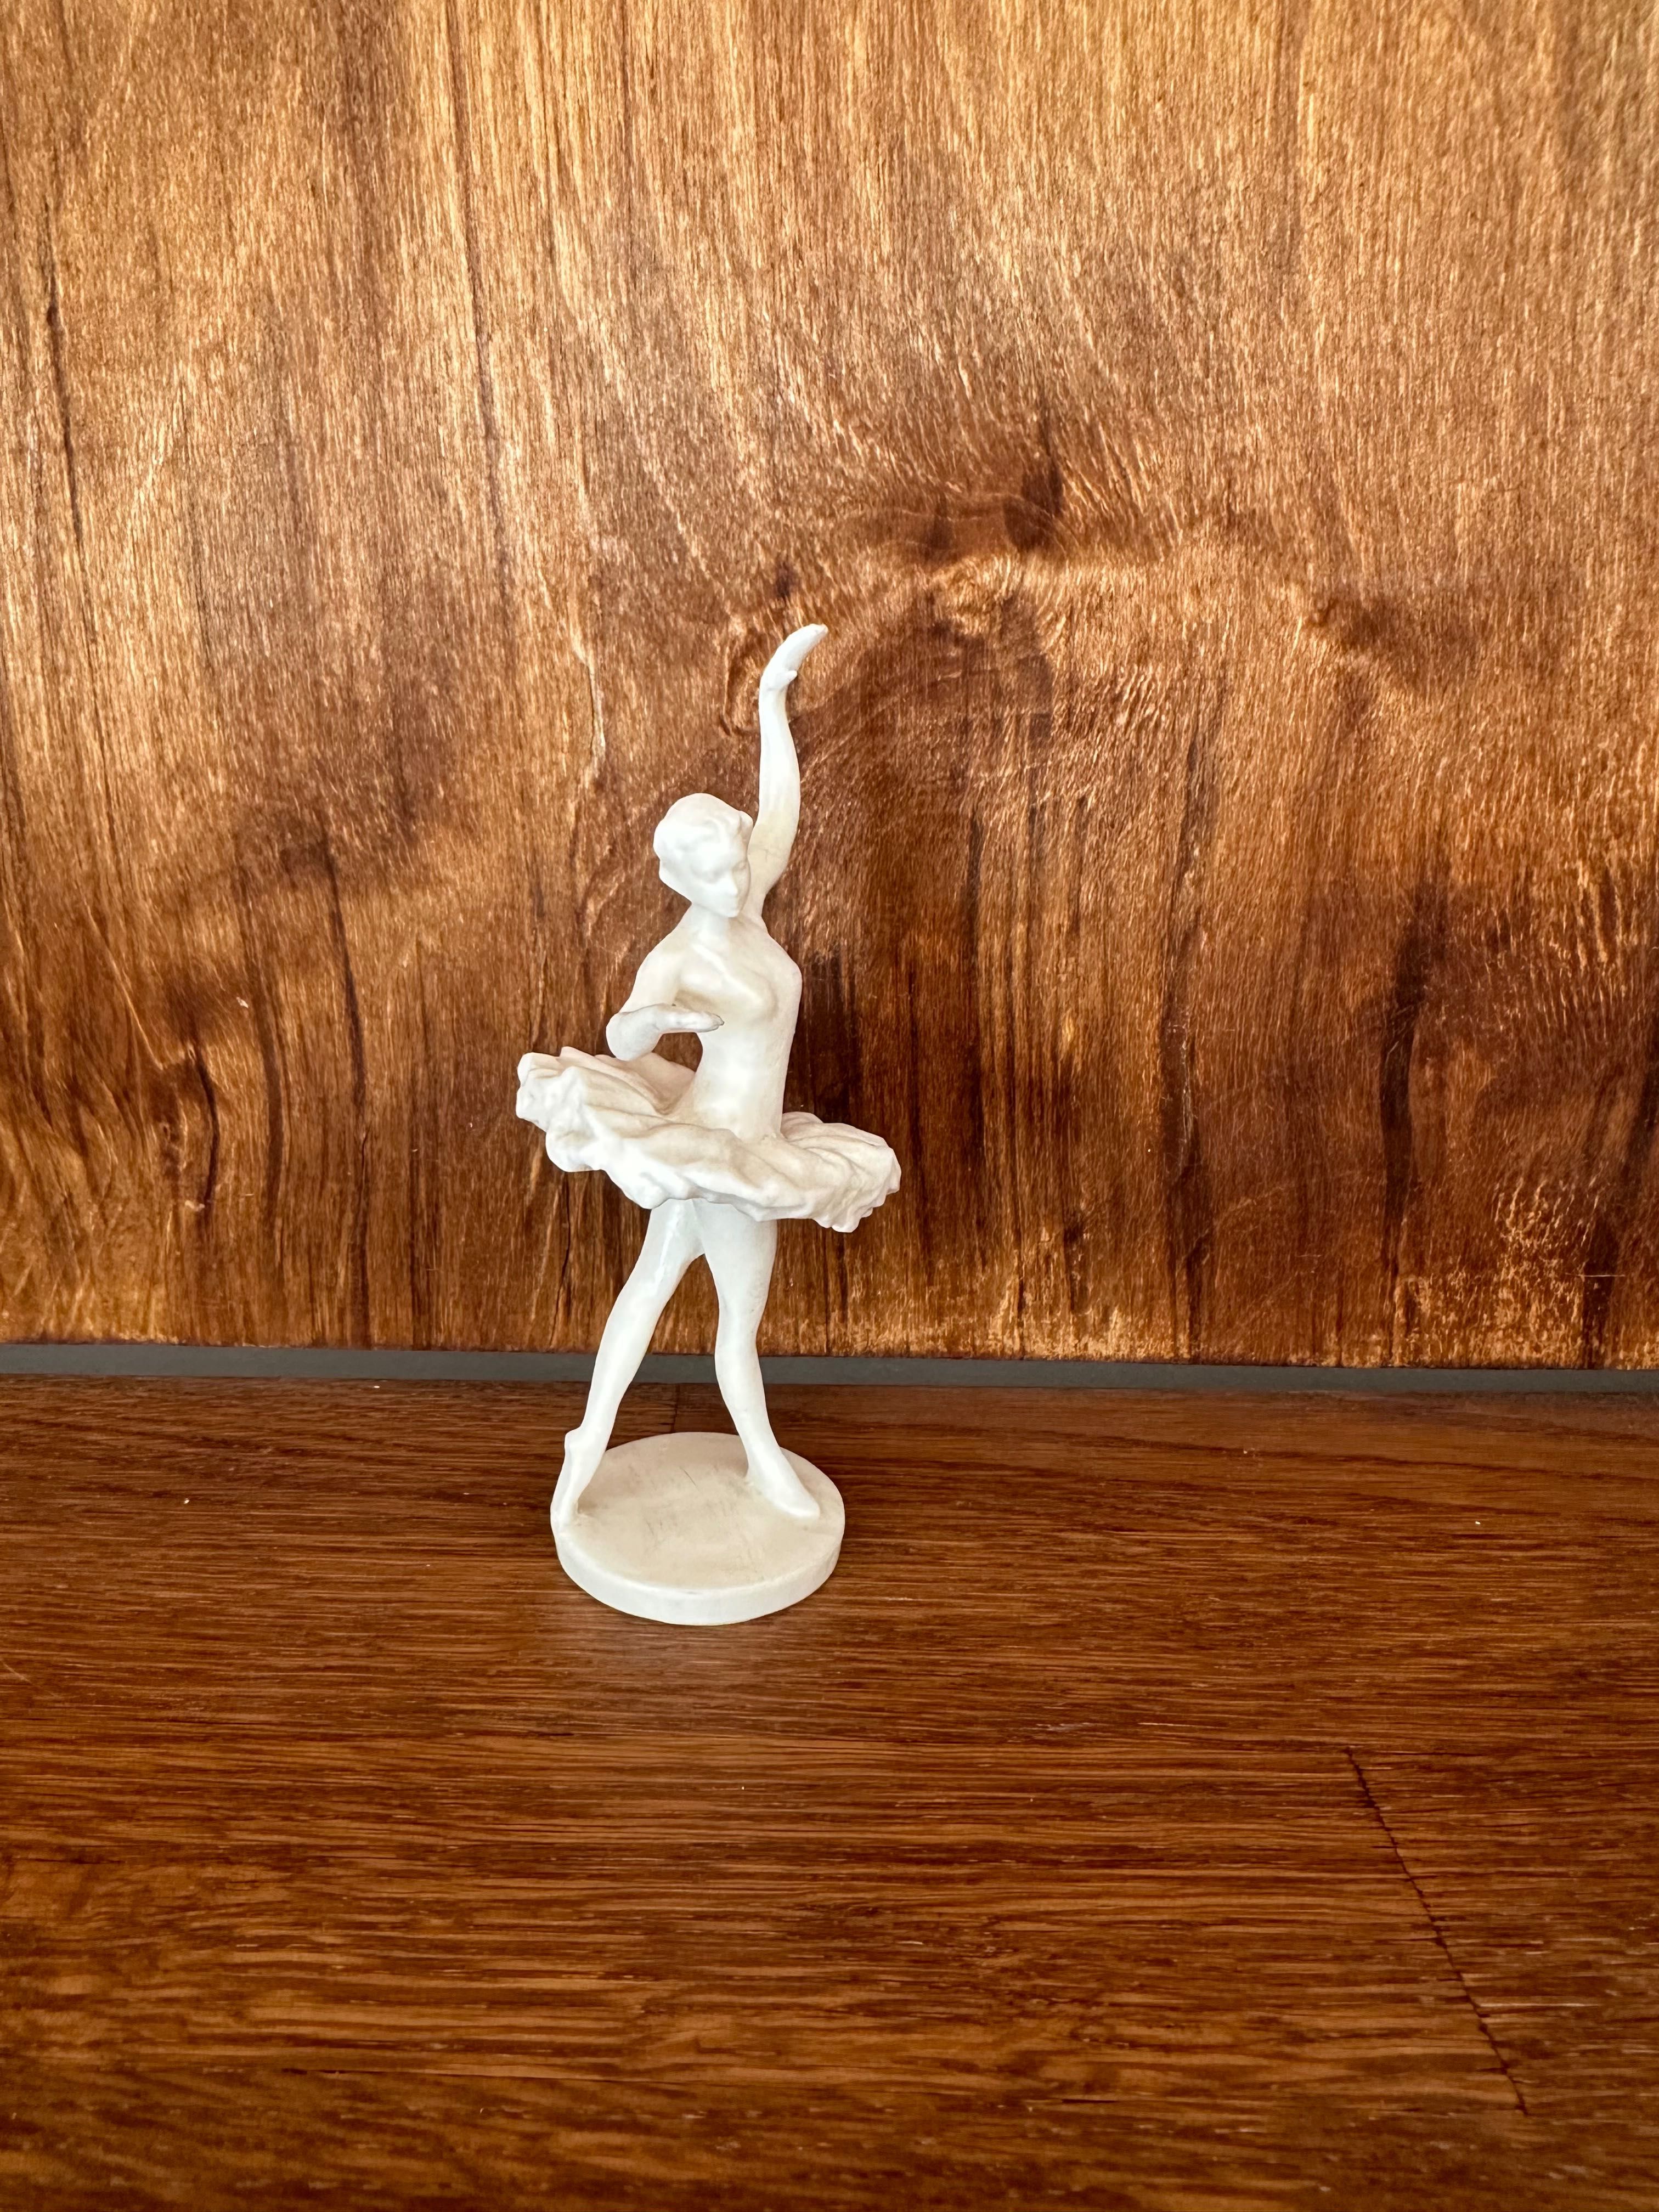 Танцююча балерина, пластик 50-60 роки минулого століття